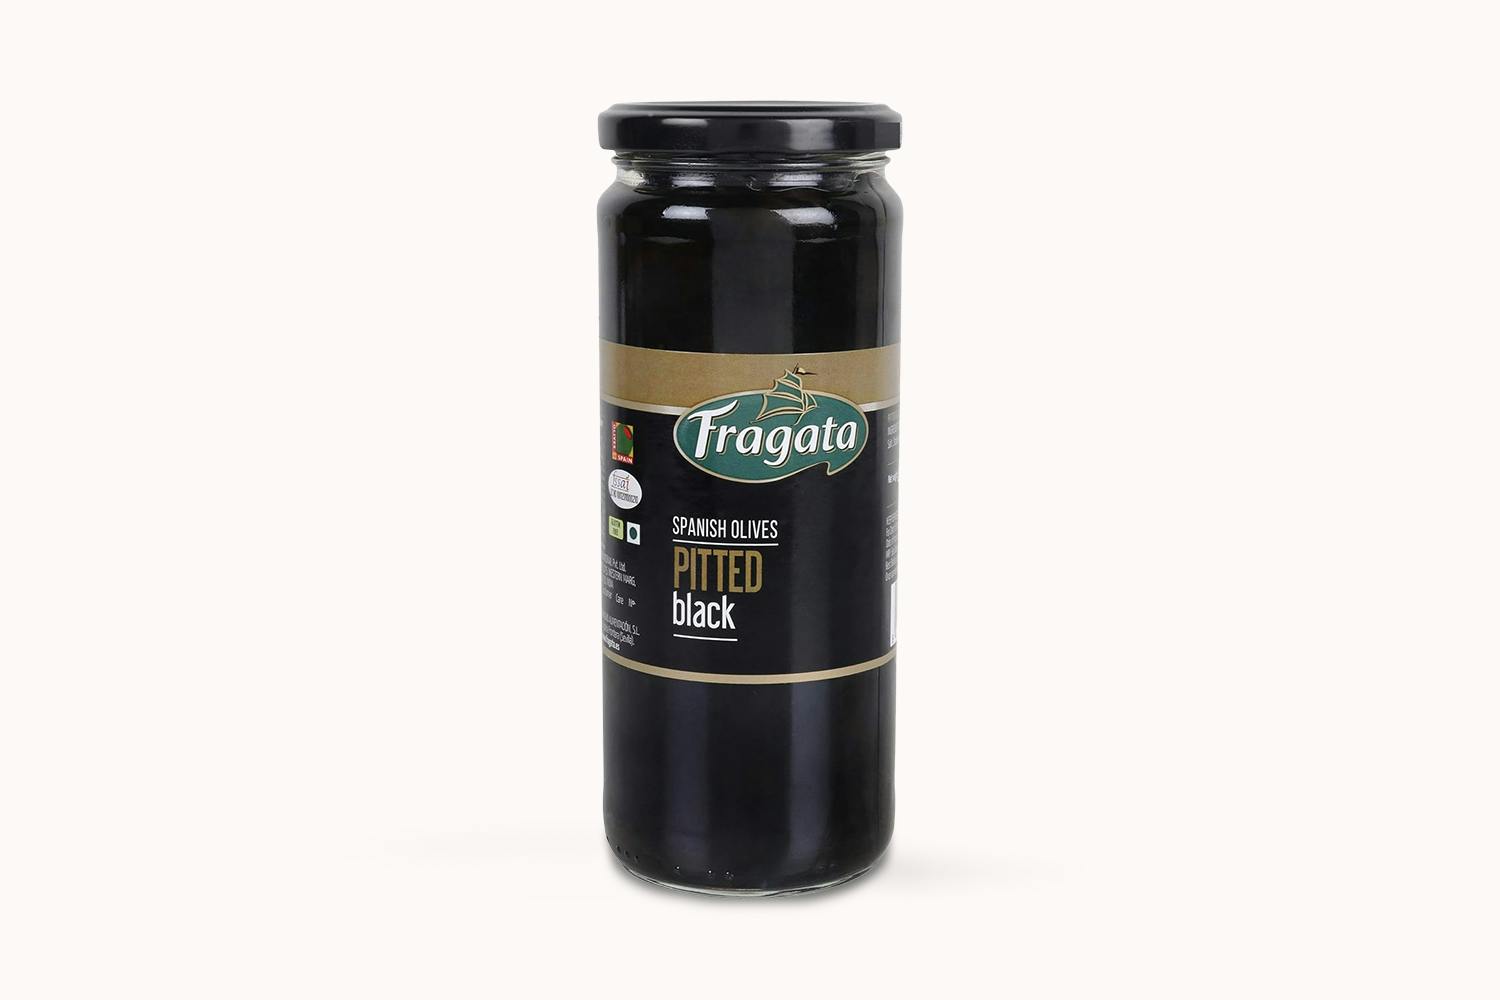 Fragata Black Olives - Pitted